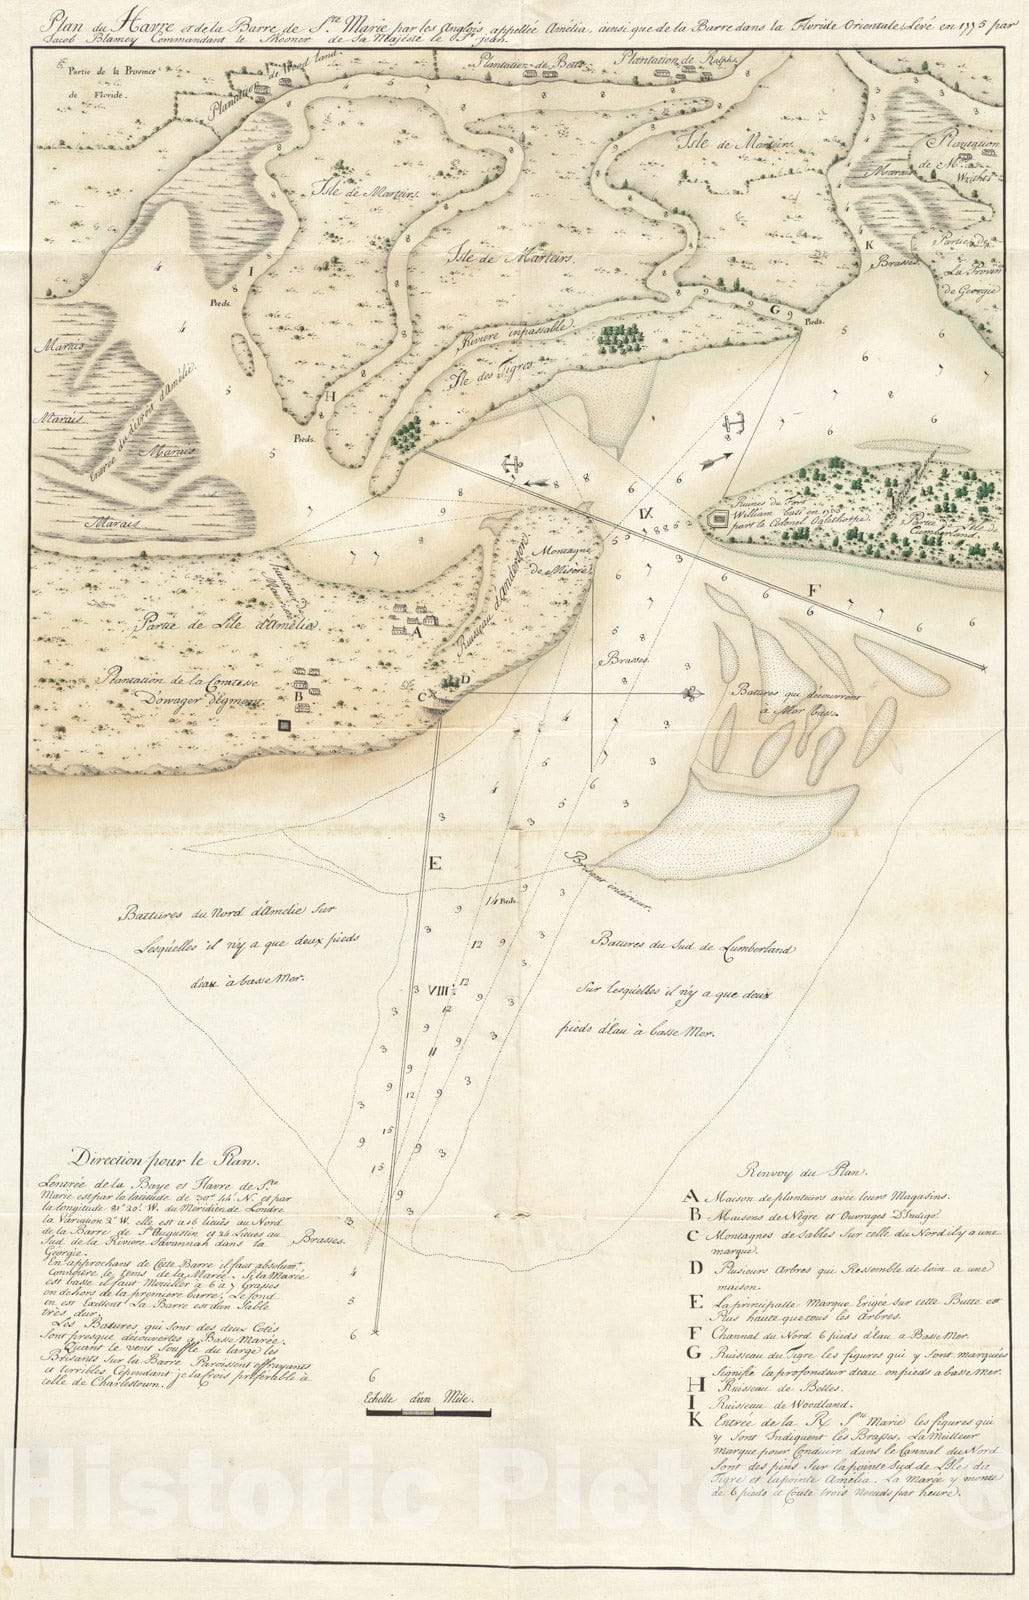 Historical Map, 1775 Plan du Havre et de la barre de Ste. Marie par les Angloises appellee Amelia, ainsi que de la Barre dans la Floride orientale, Vintage Wall Art